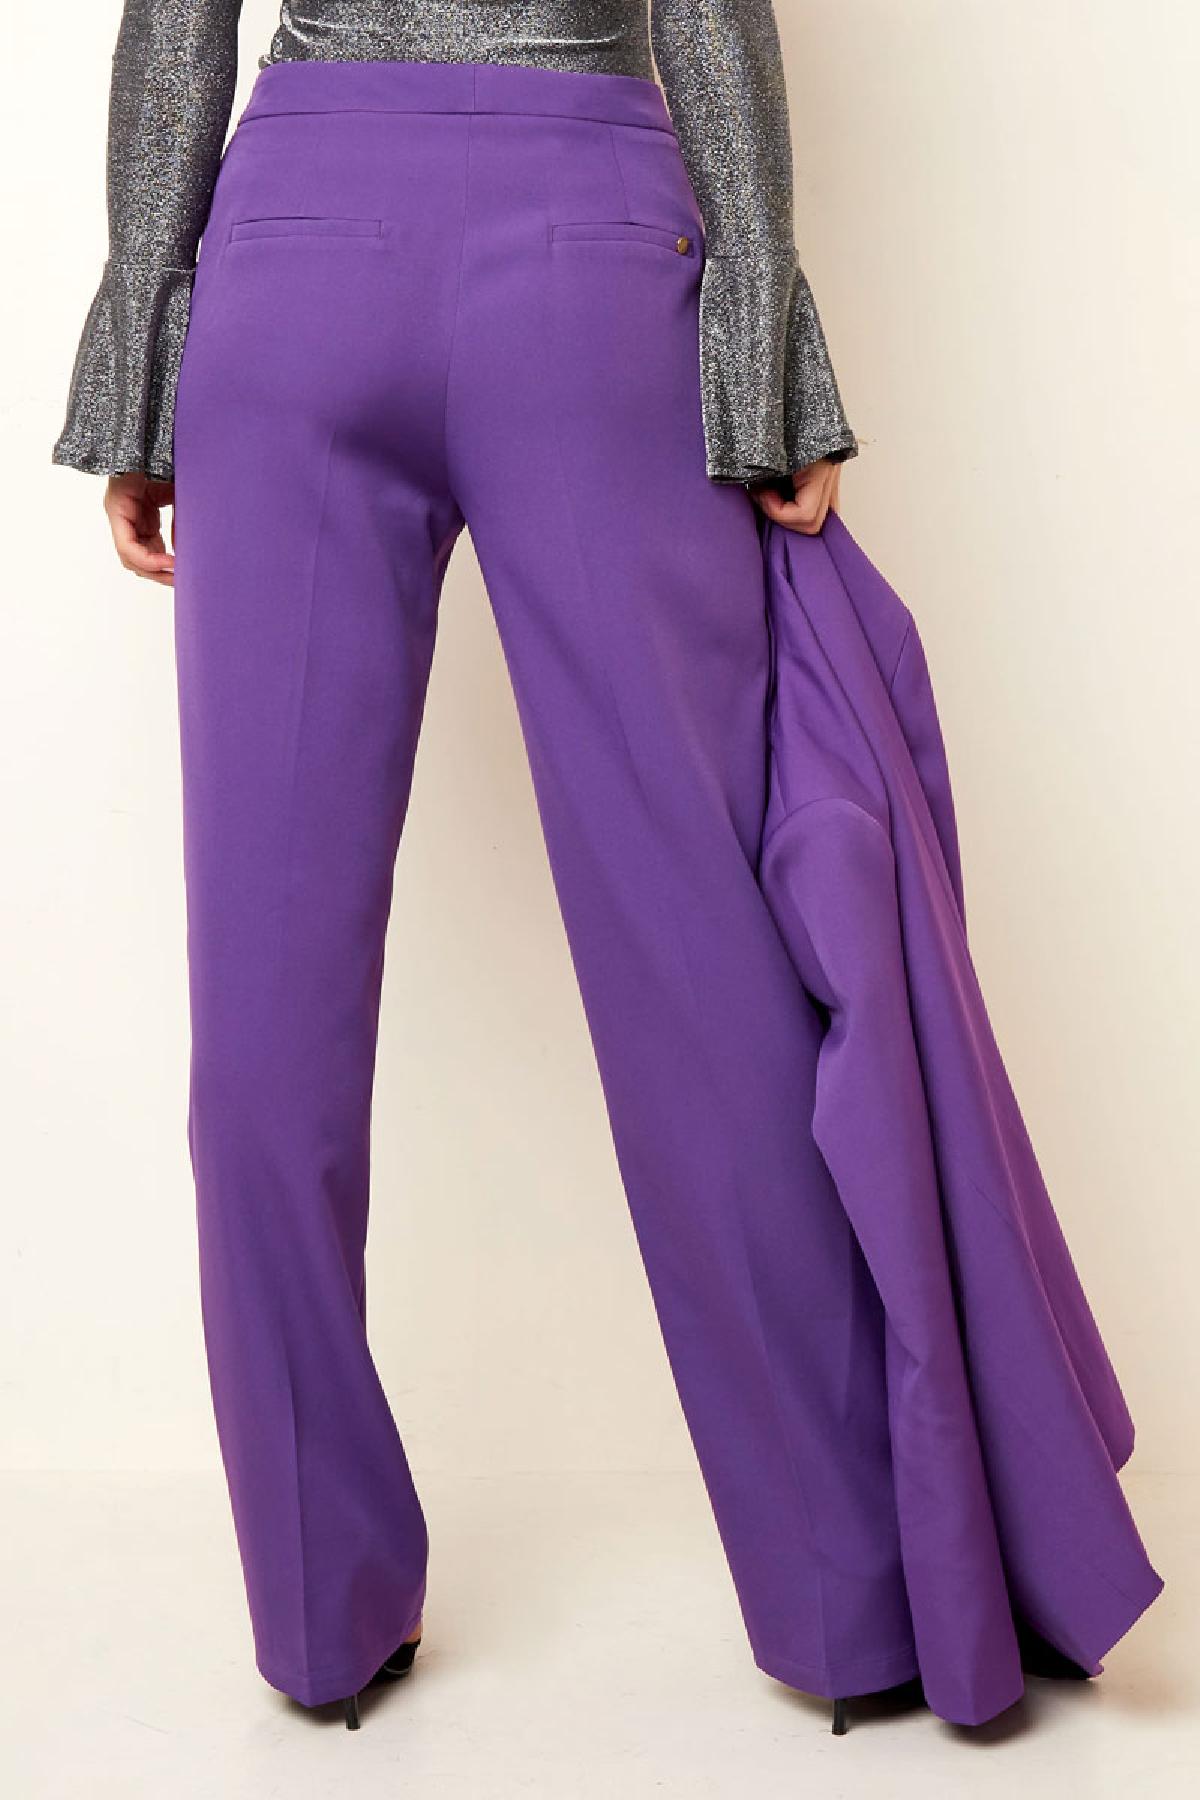 Pantalones básicos - Imprescindibles para las vacaciones Beige S h5 Imagen7